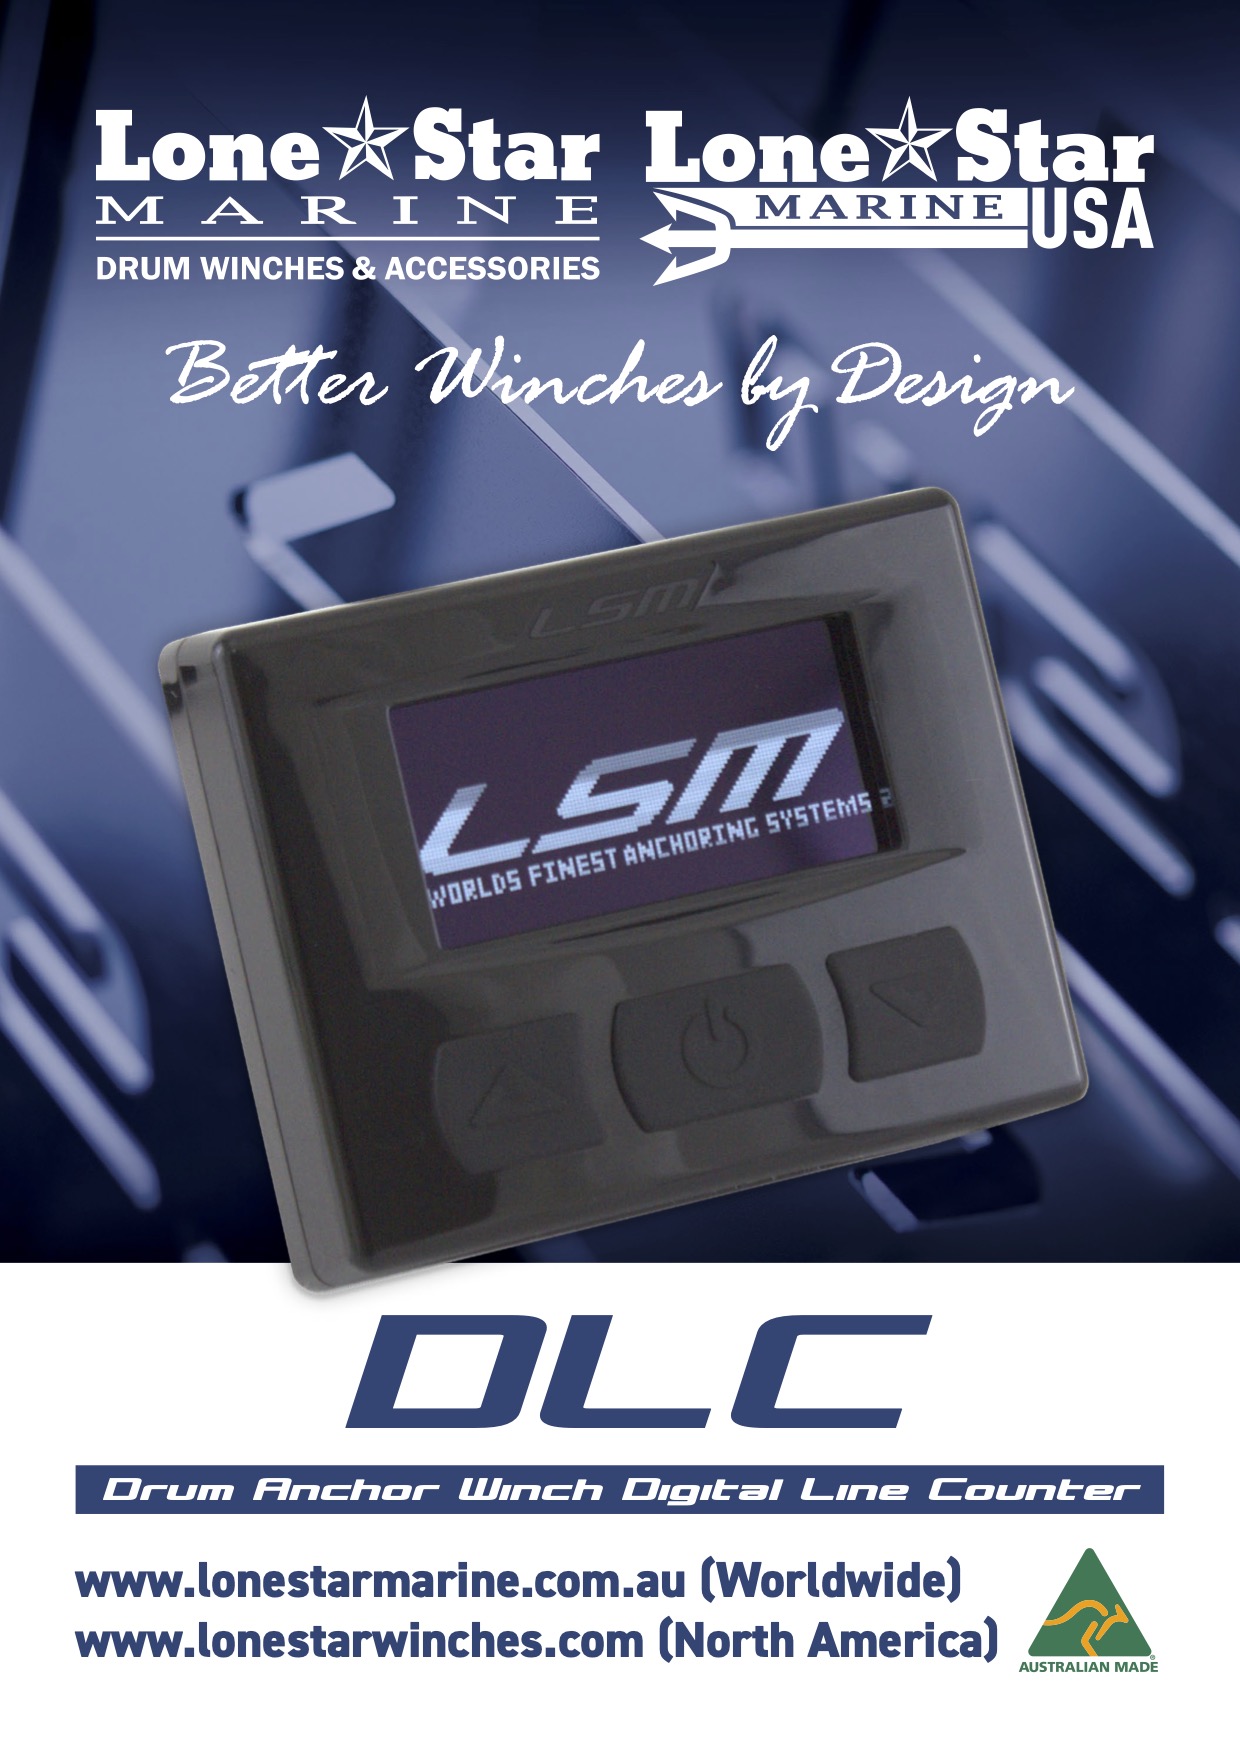 DLC - Digital Line Counter